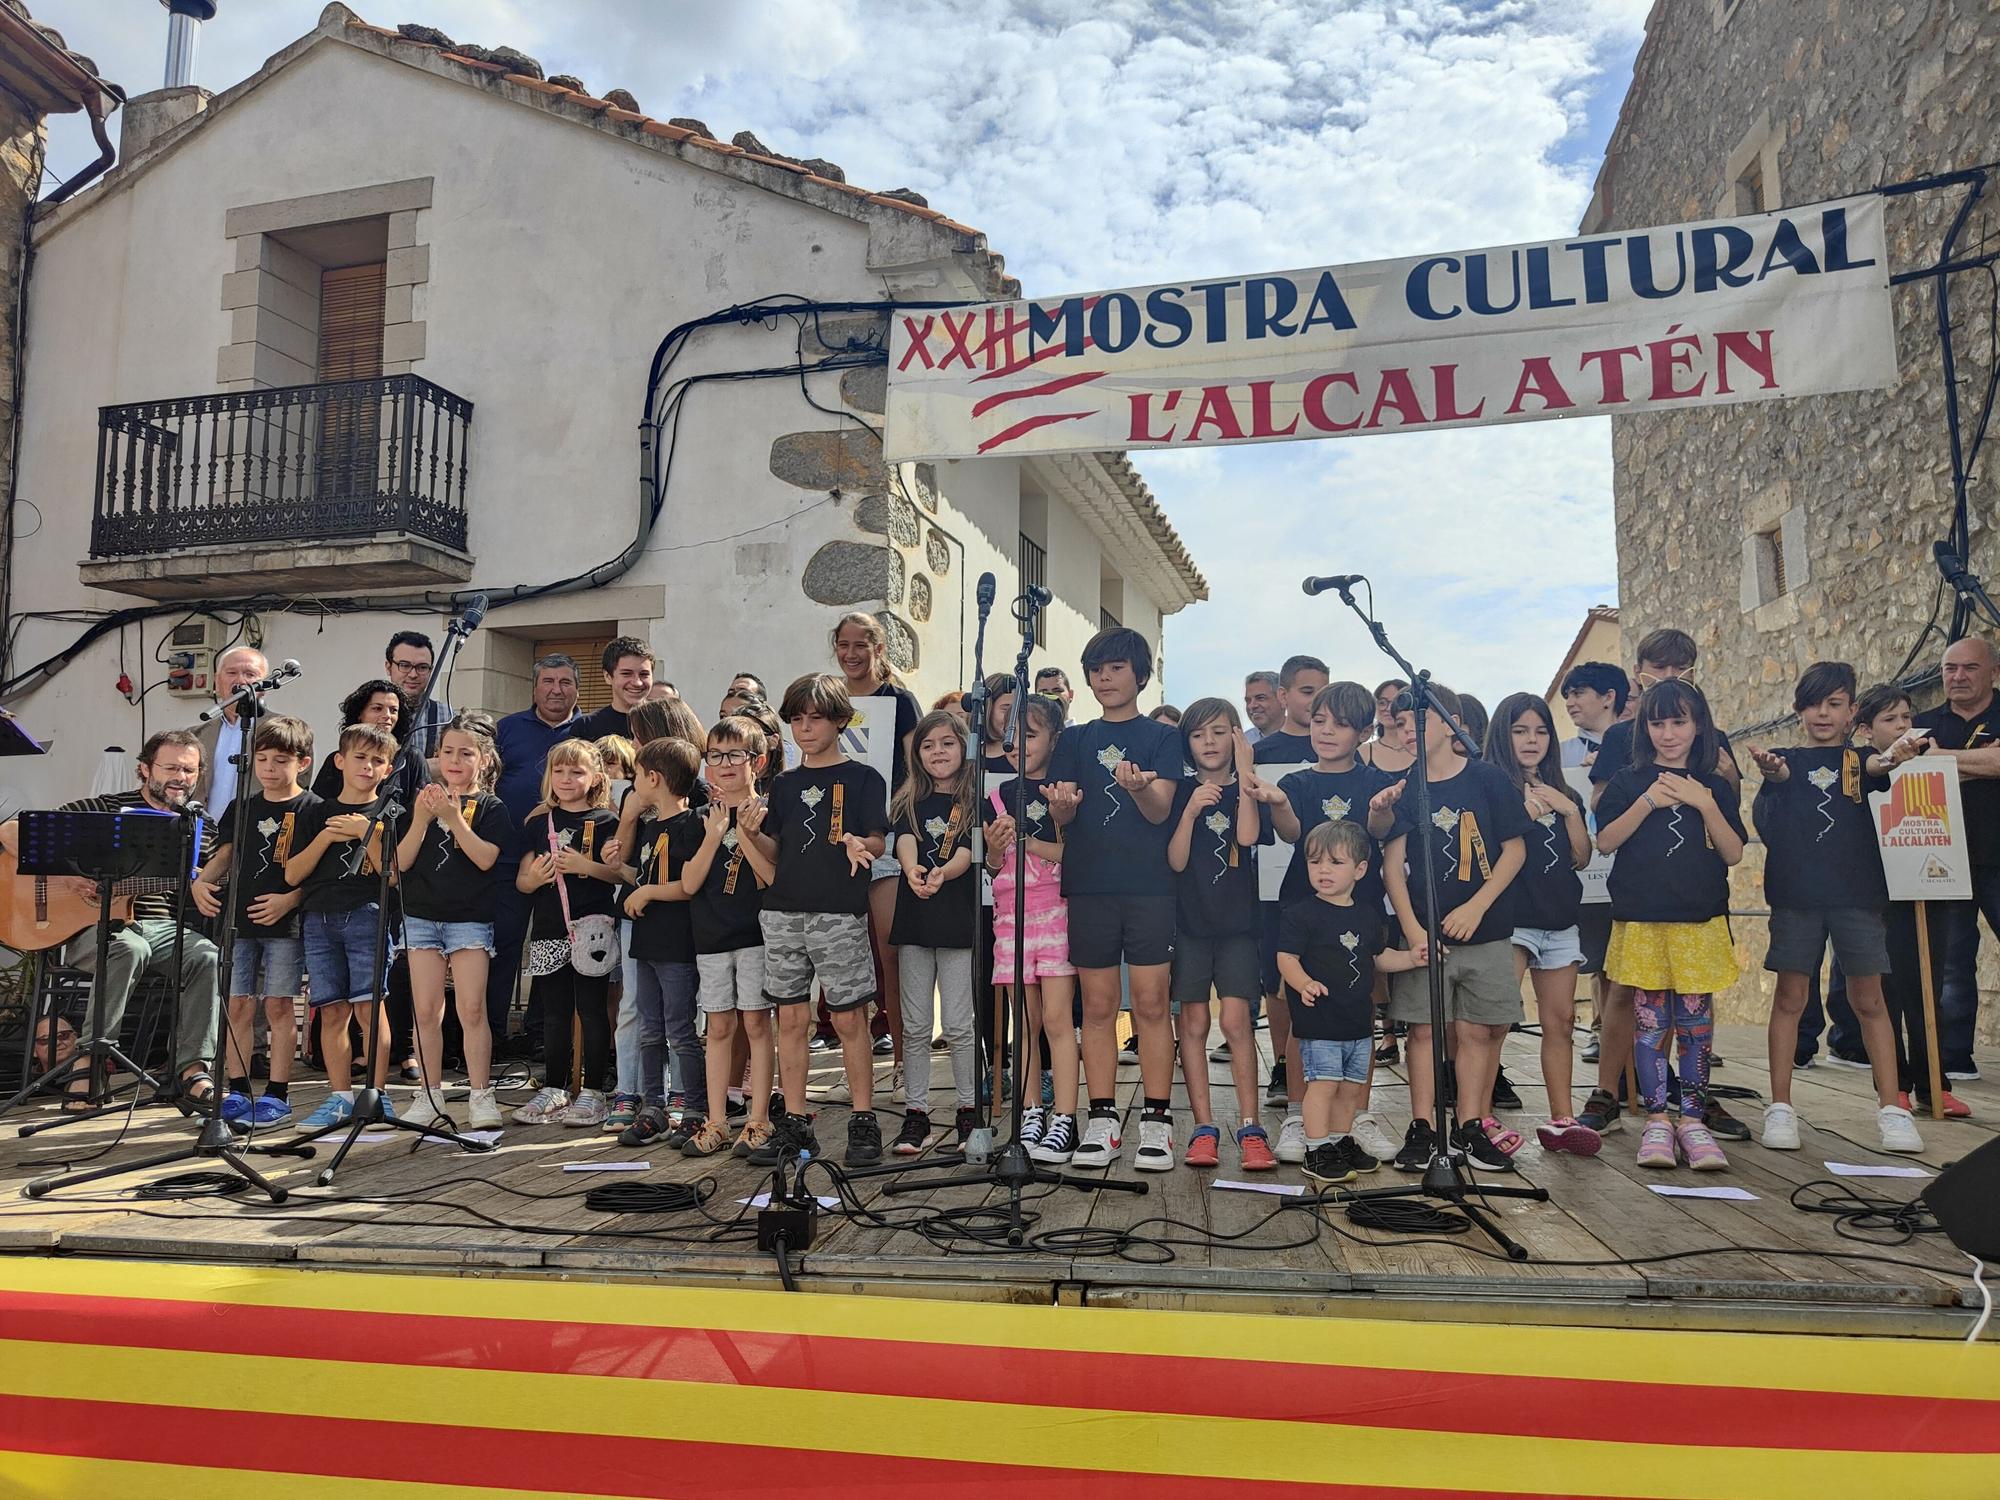 Galería: Las imágenes de la XXII Mostra Cultural de l'Alcalatén